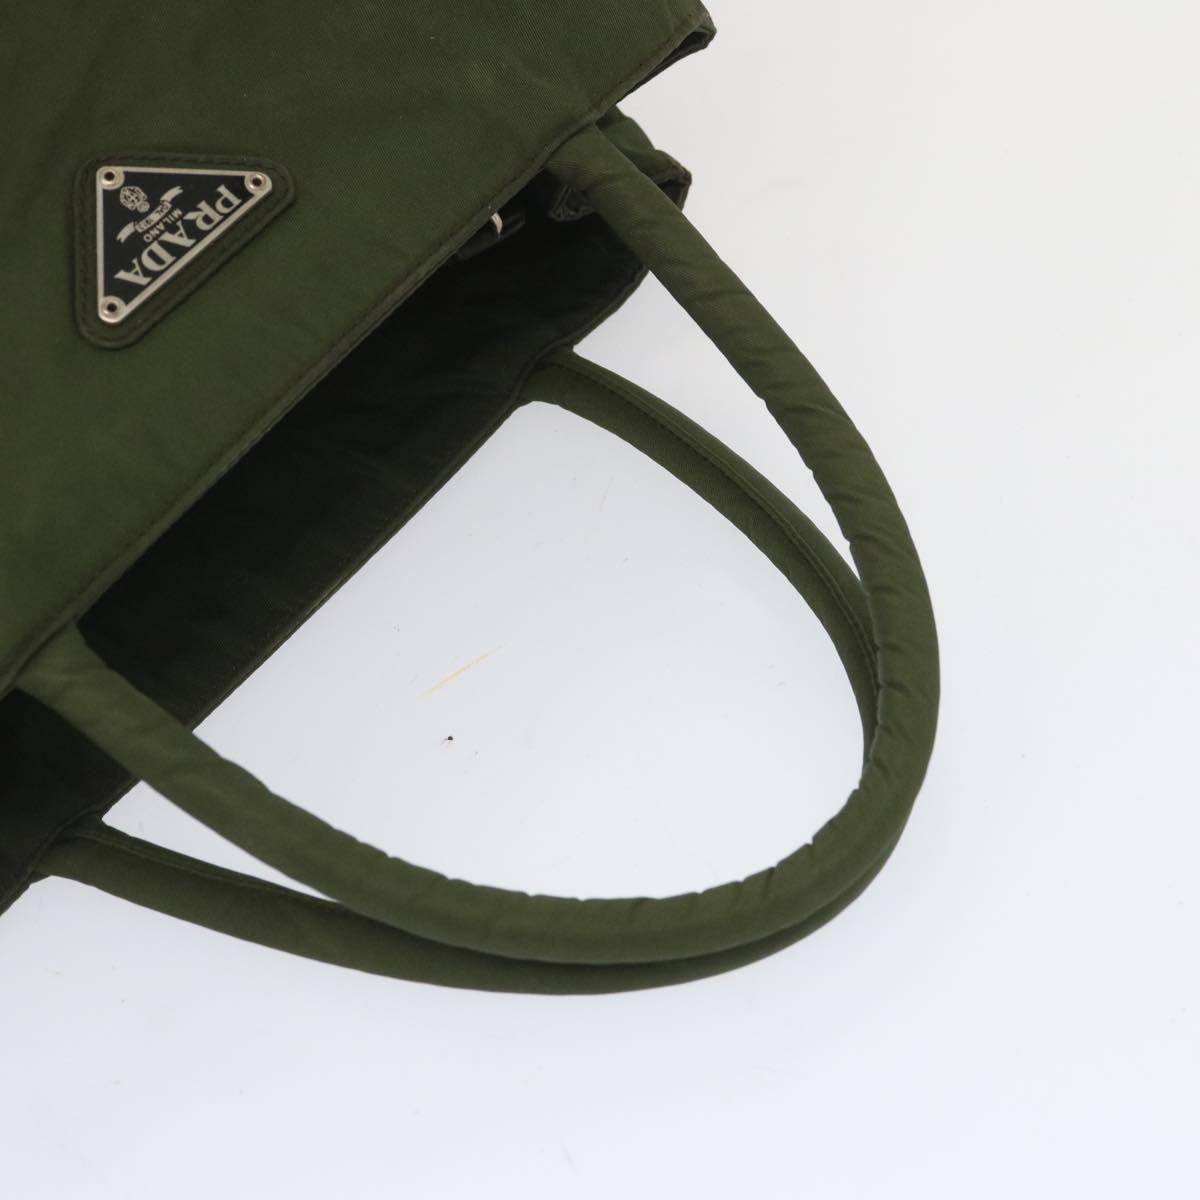 PRADA Hand Bag Nylon Khaki Auth 67980